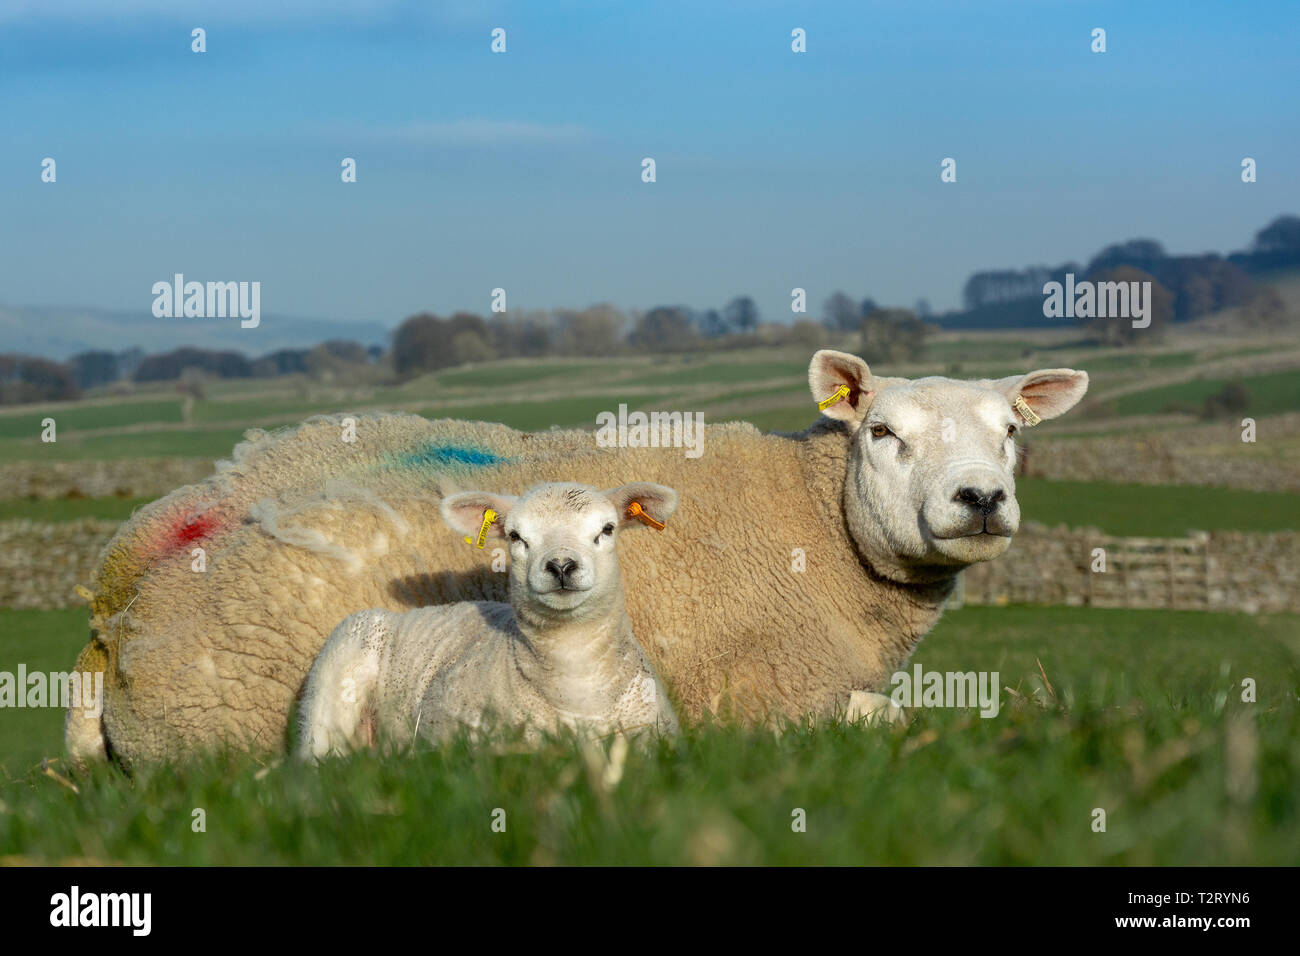 Texel pecora e agnello in pascoli, Wensleydale, North Yorkshire, Regno Unito. Foto Stock